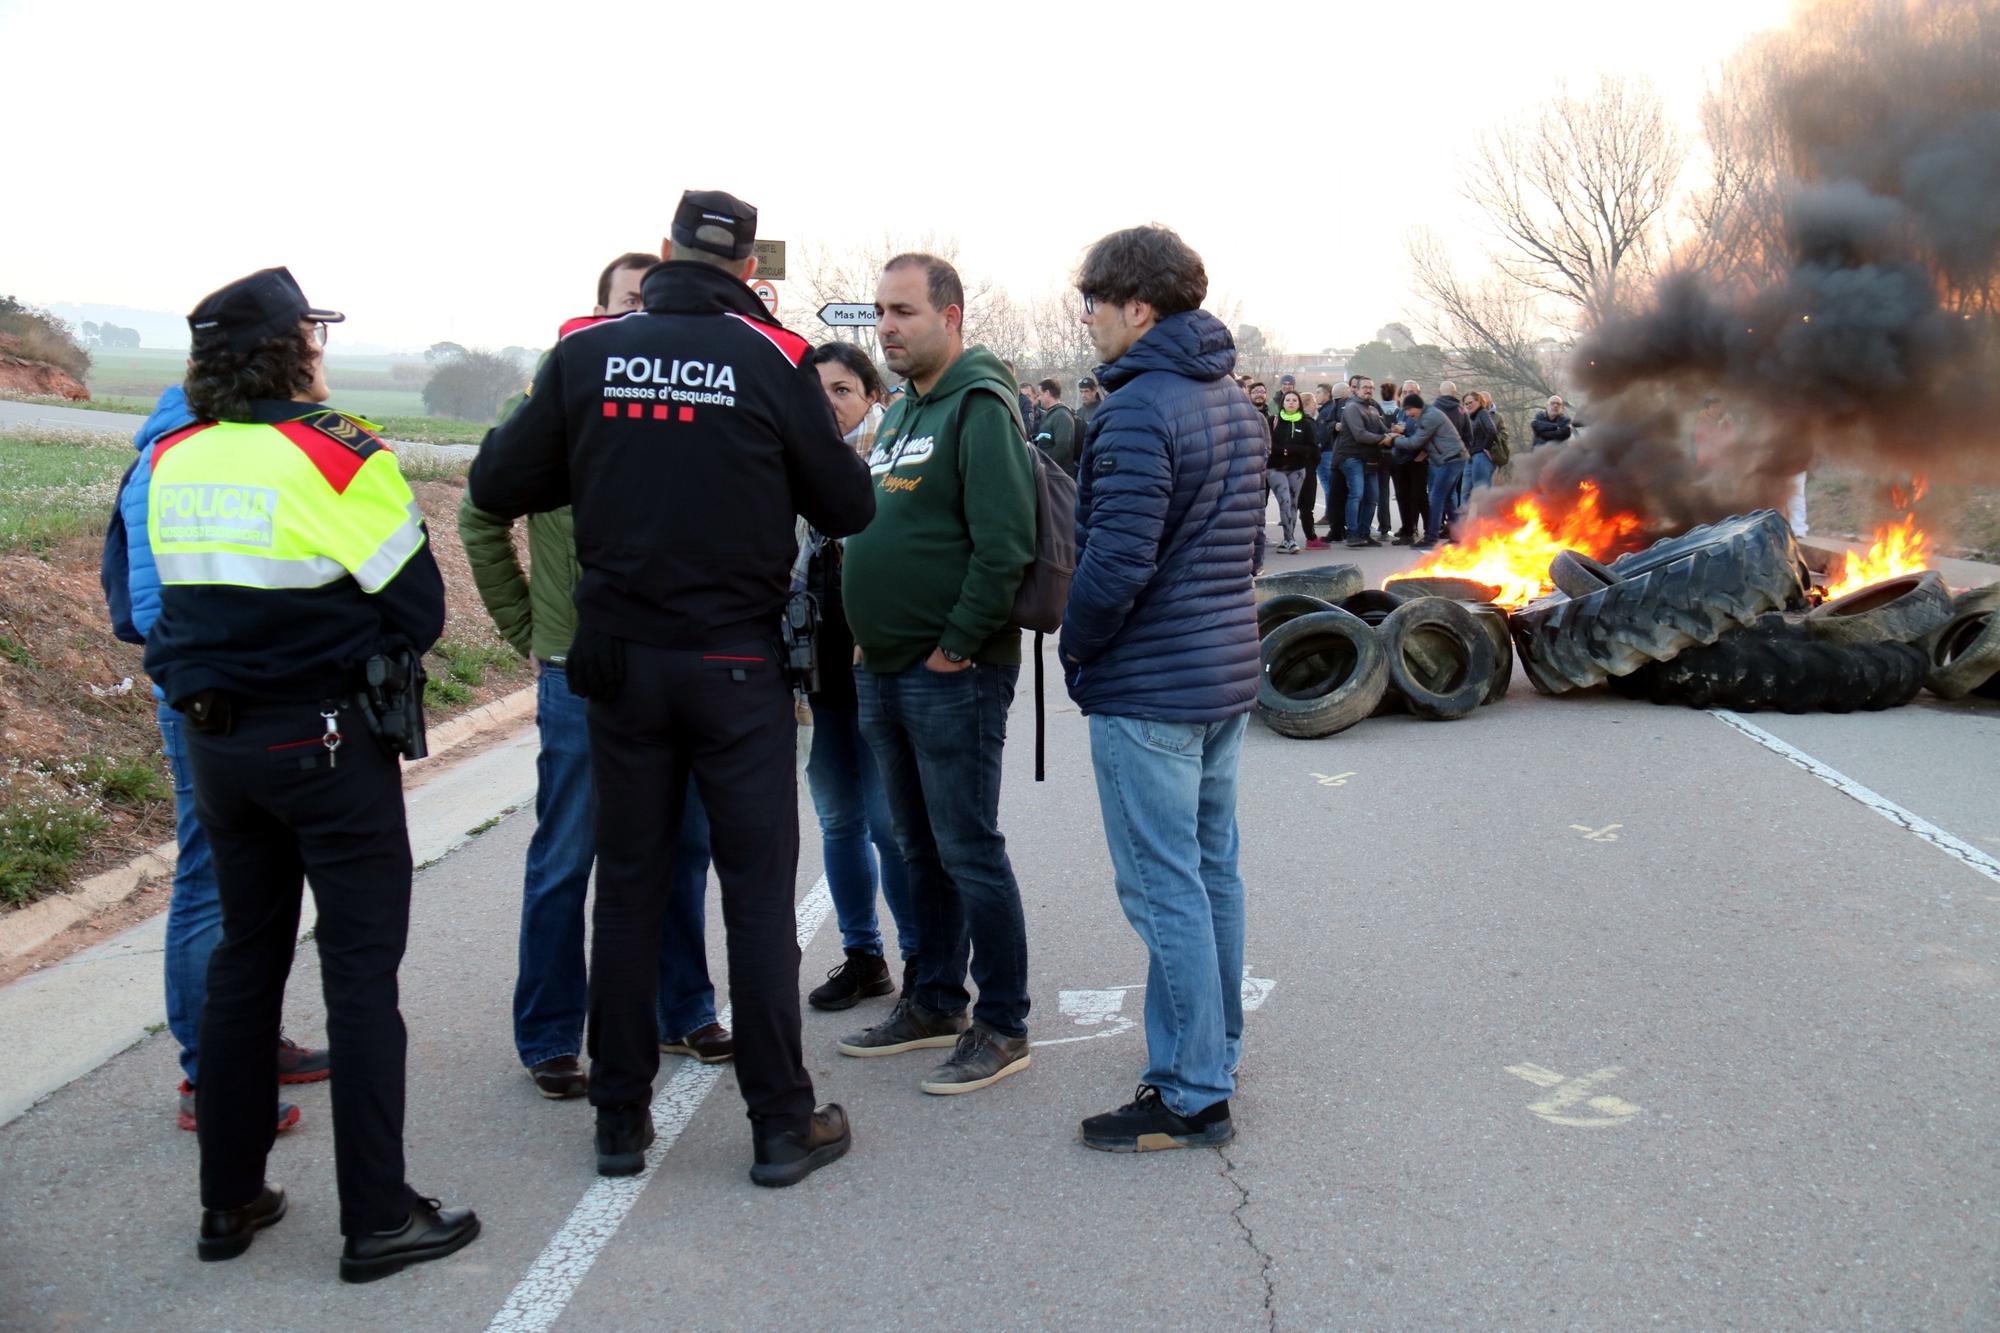 Els Mossos d'Esquadra parlen amb els representants de la protesta a Lledoners, al Bages